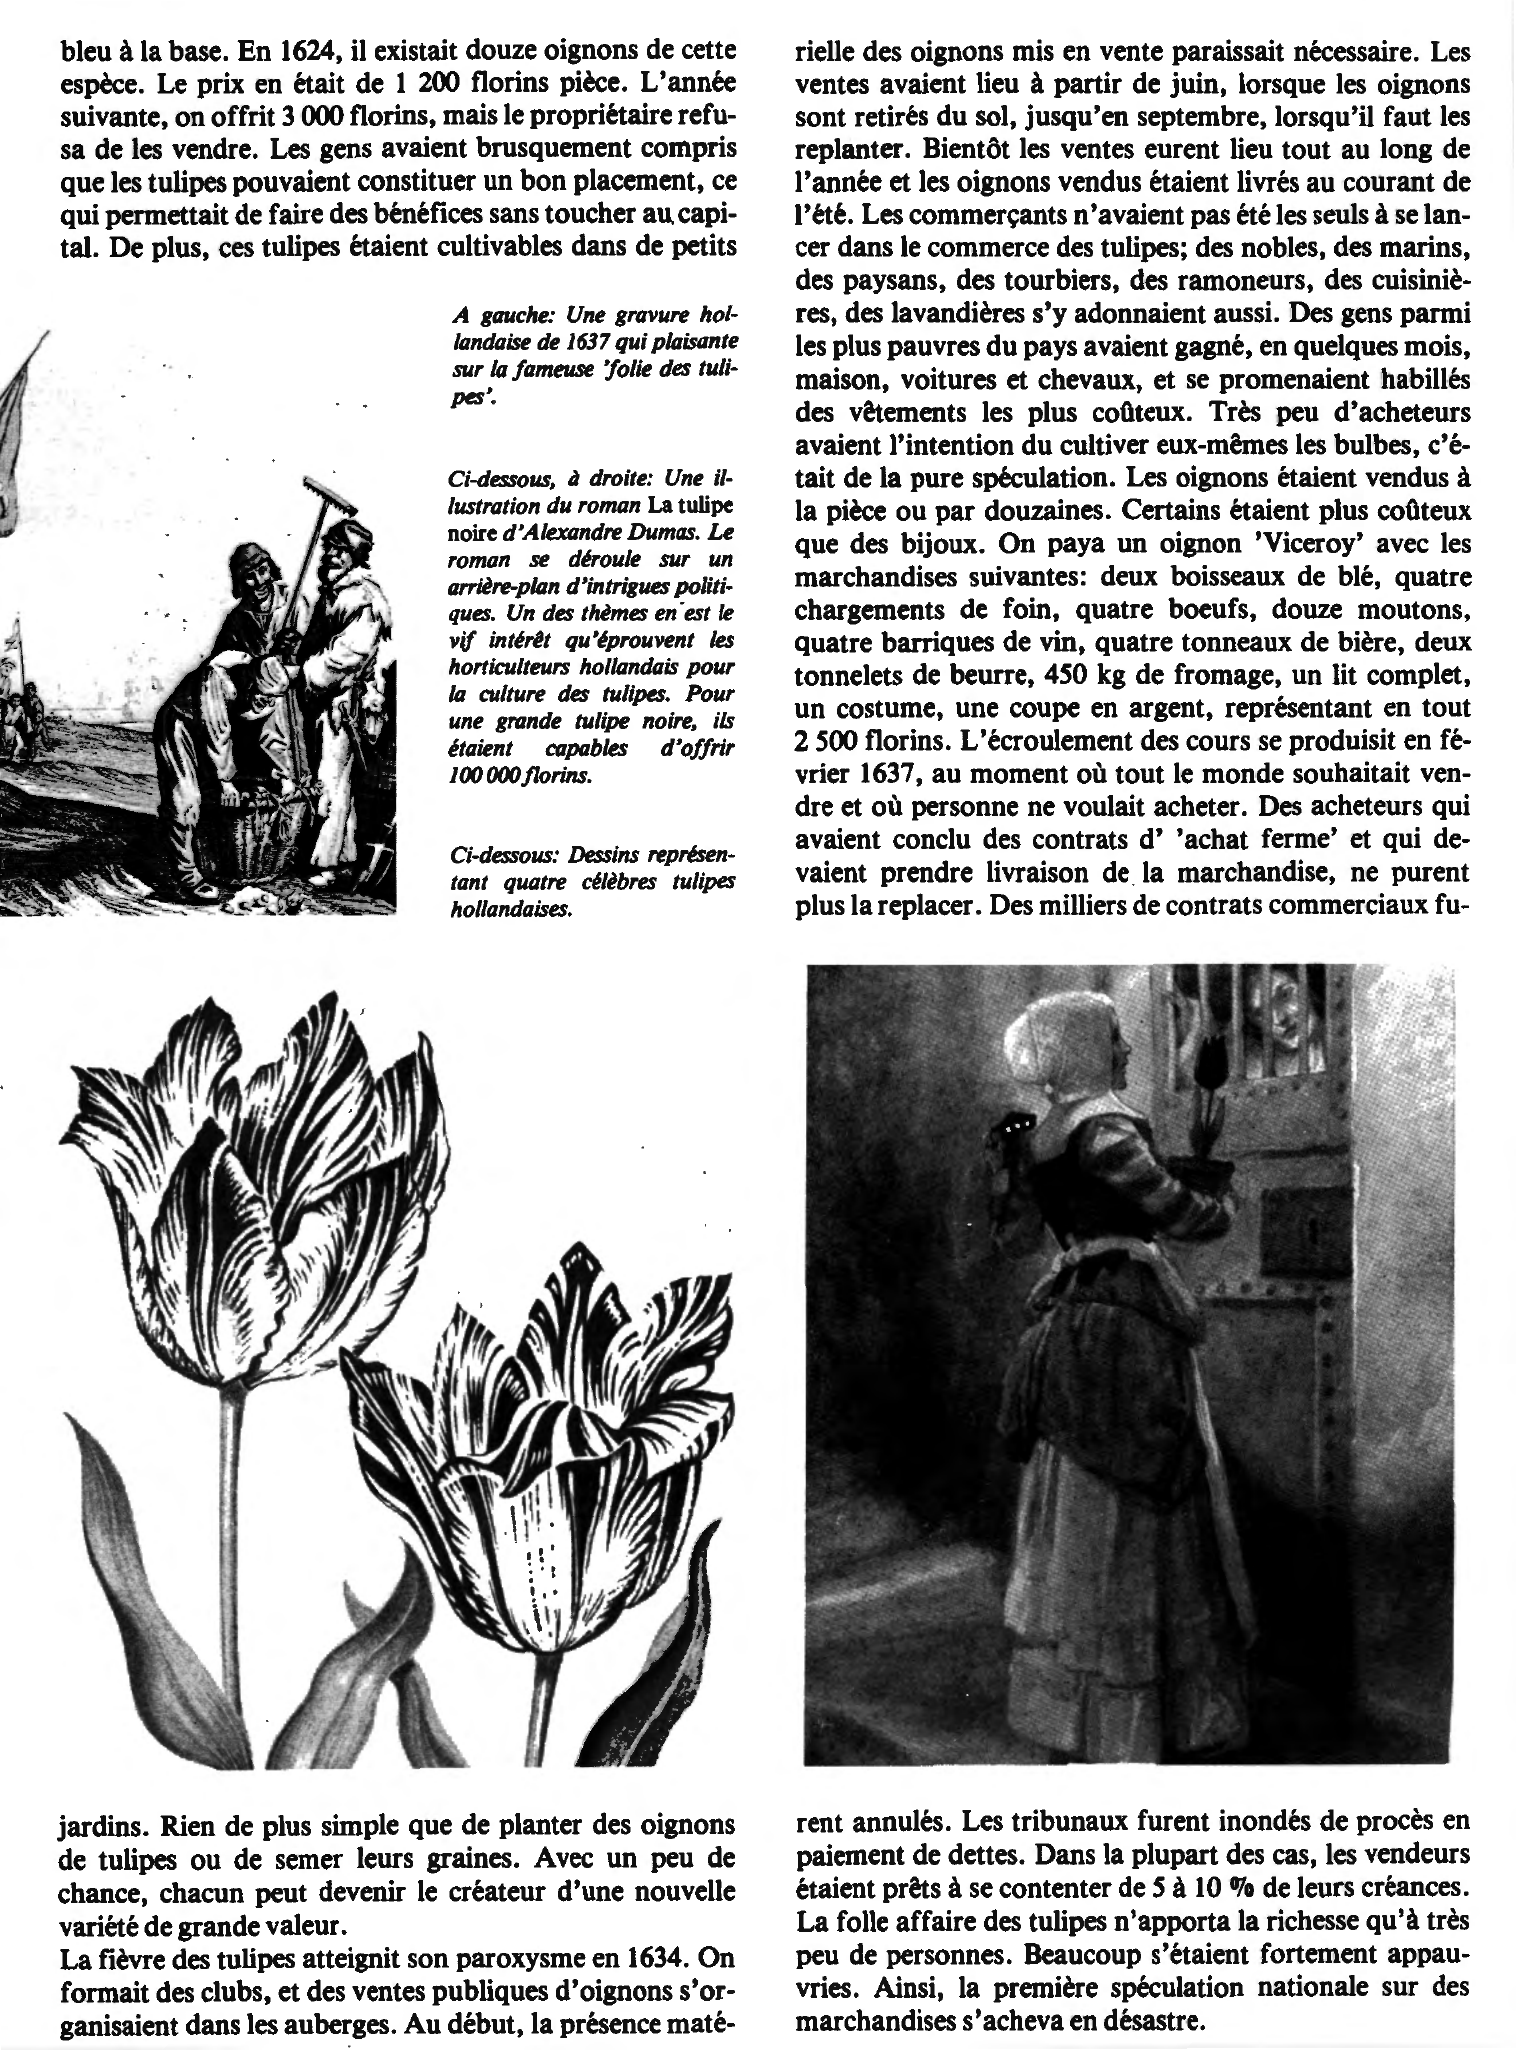 Prévisualisation du document La folle affaire des tulipes Pays-Bas, vers 1630 (histoire)